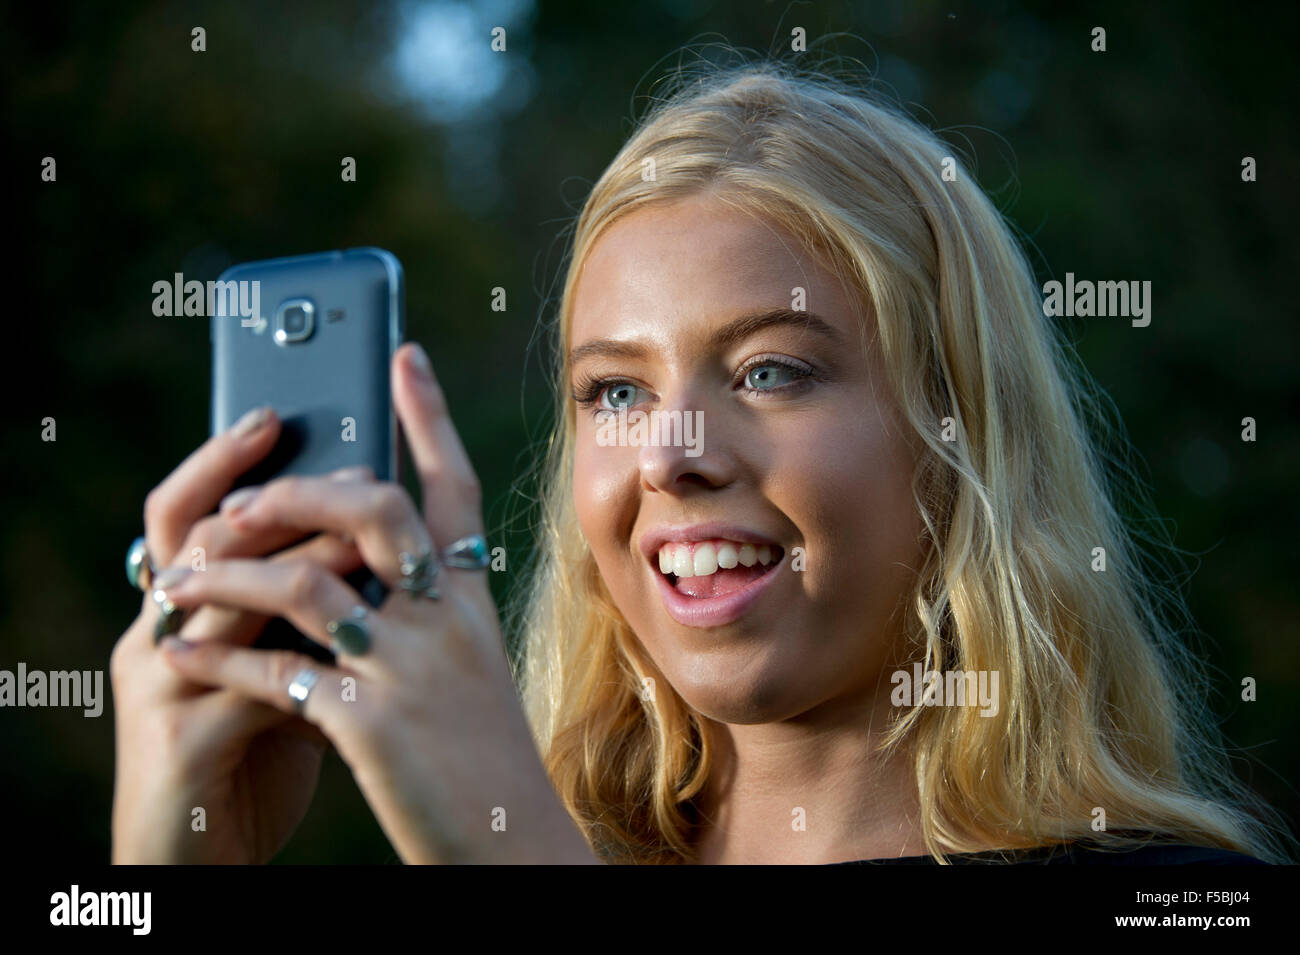 Junge blonde Frau mit Handy im Dunkeln Stockfoto